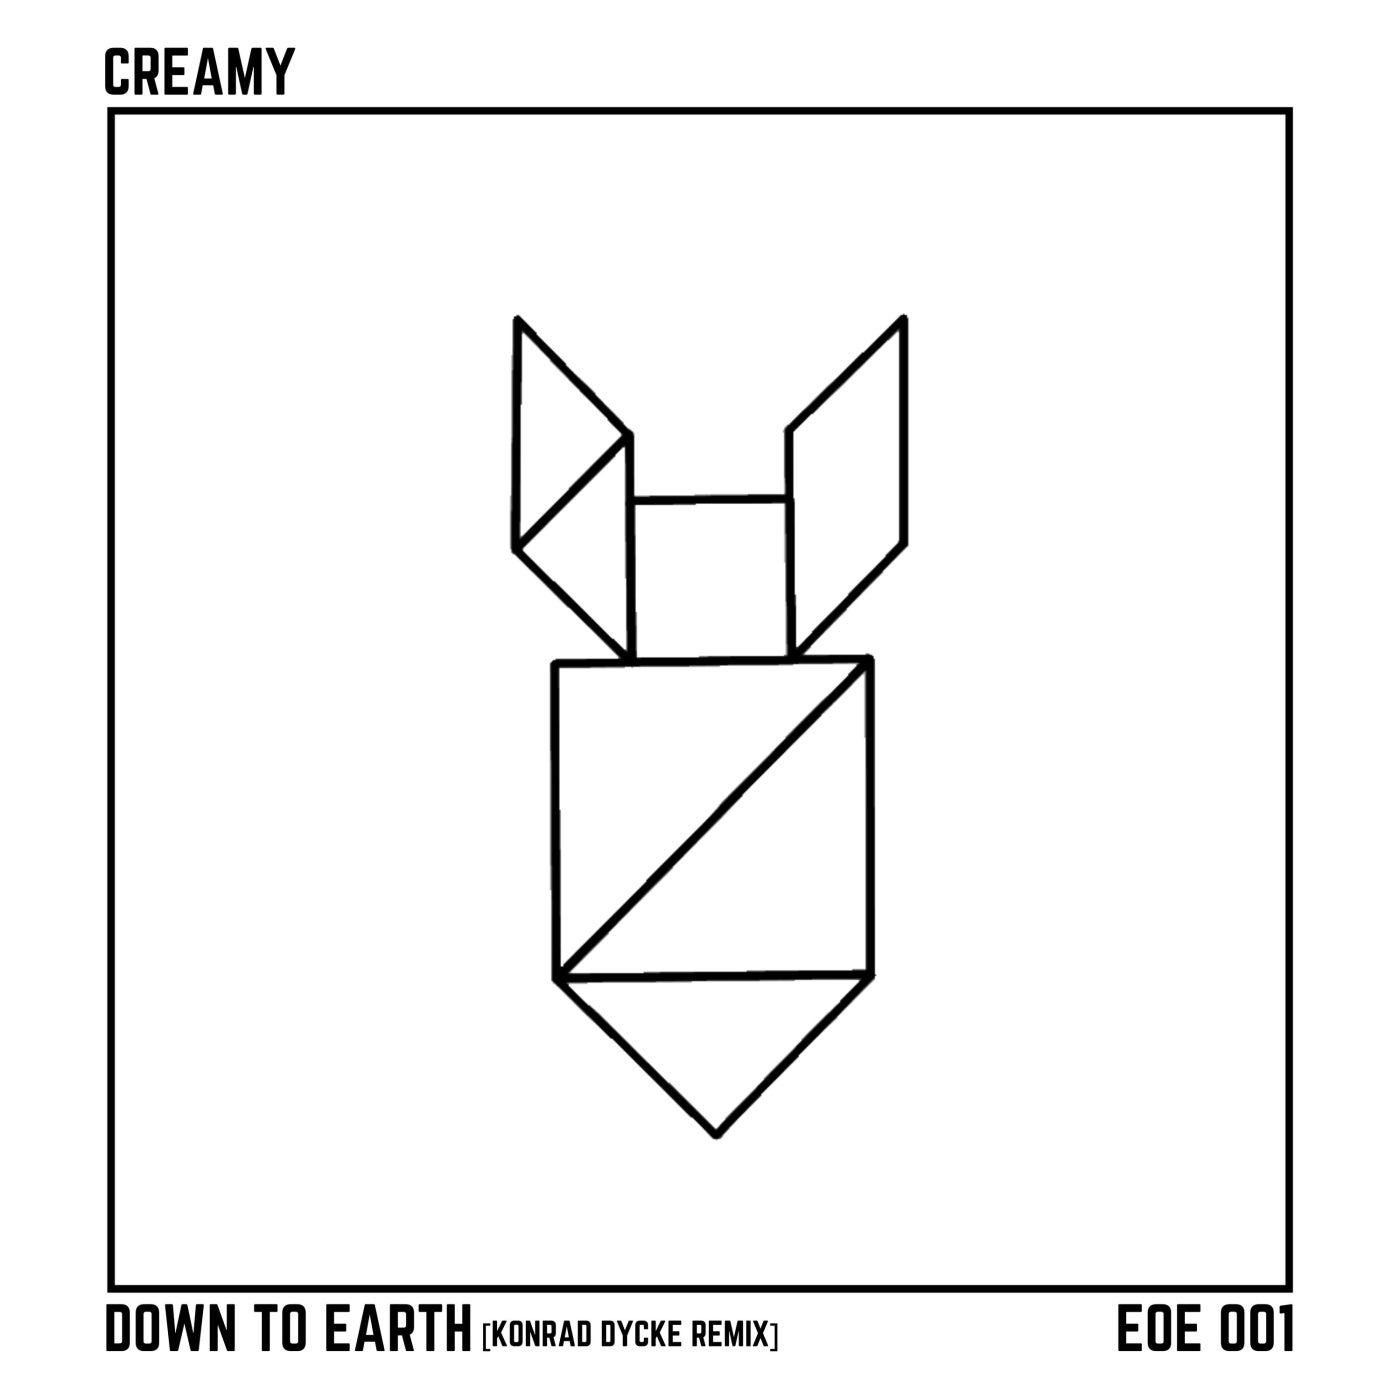 Down to Earth (Konrad Dycke Remix)